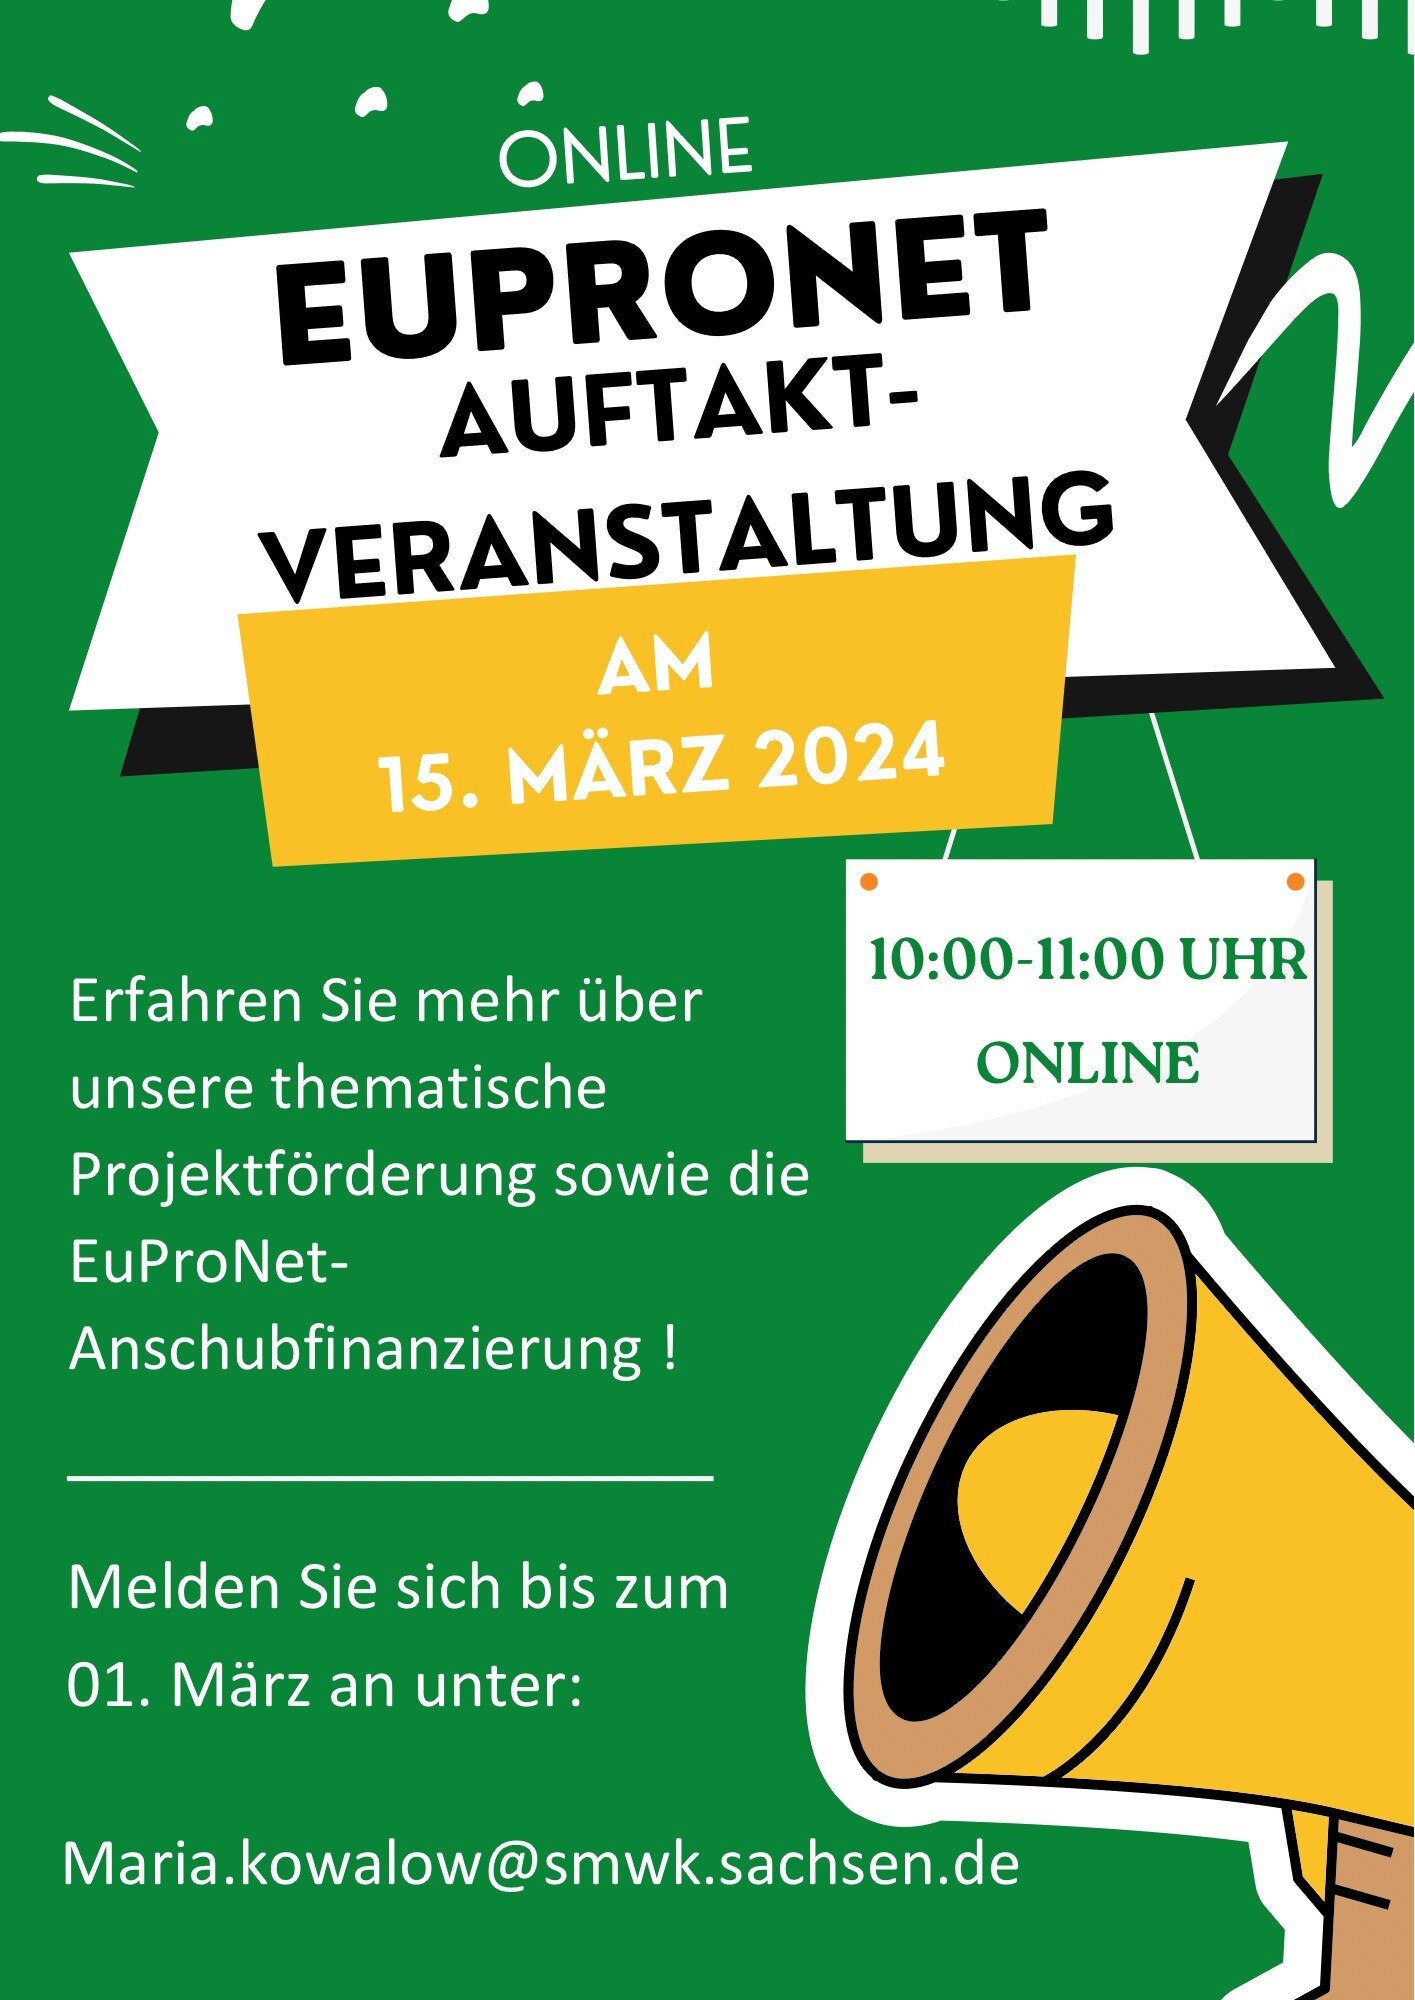 EuProNet Auftaktveranstaltung findet am 15. März 2024 von 10:00 bis 11:00 Uhr online statt.